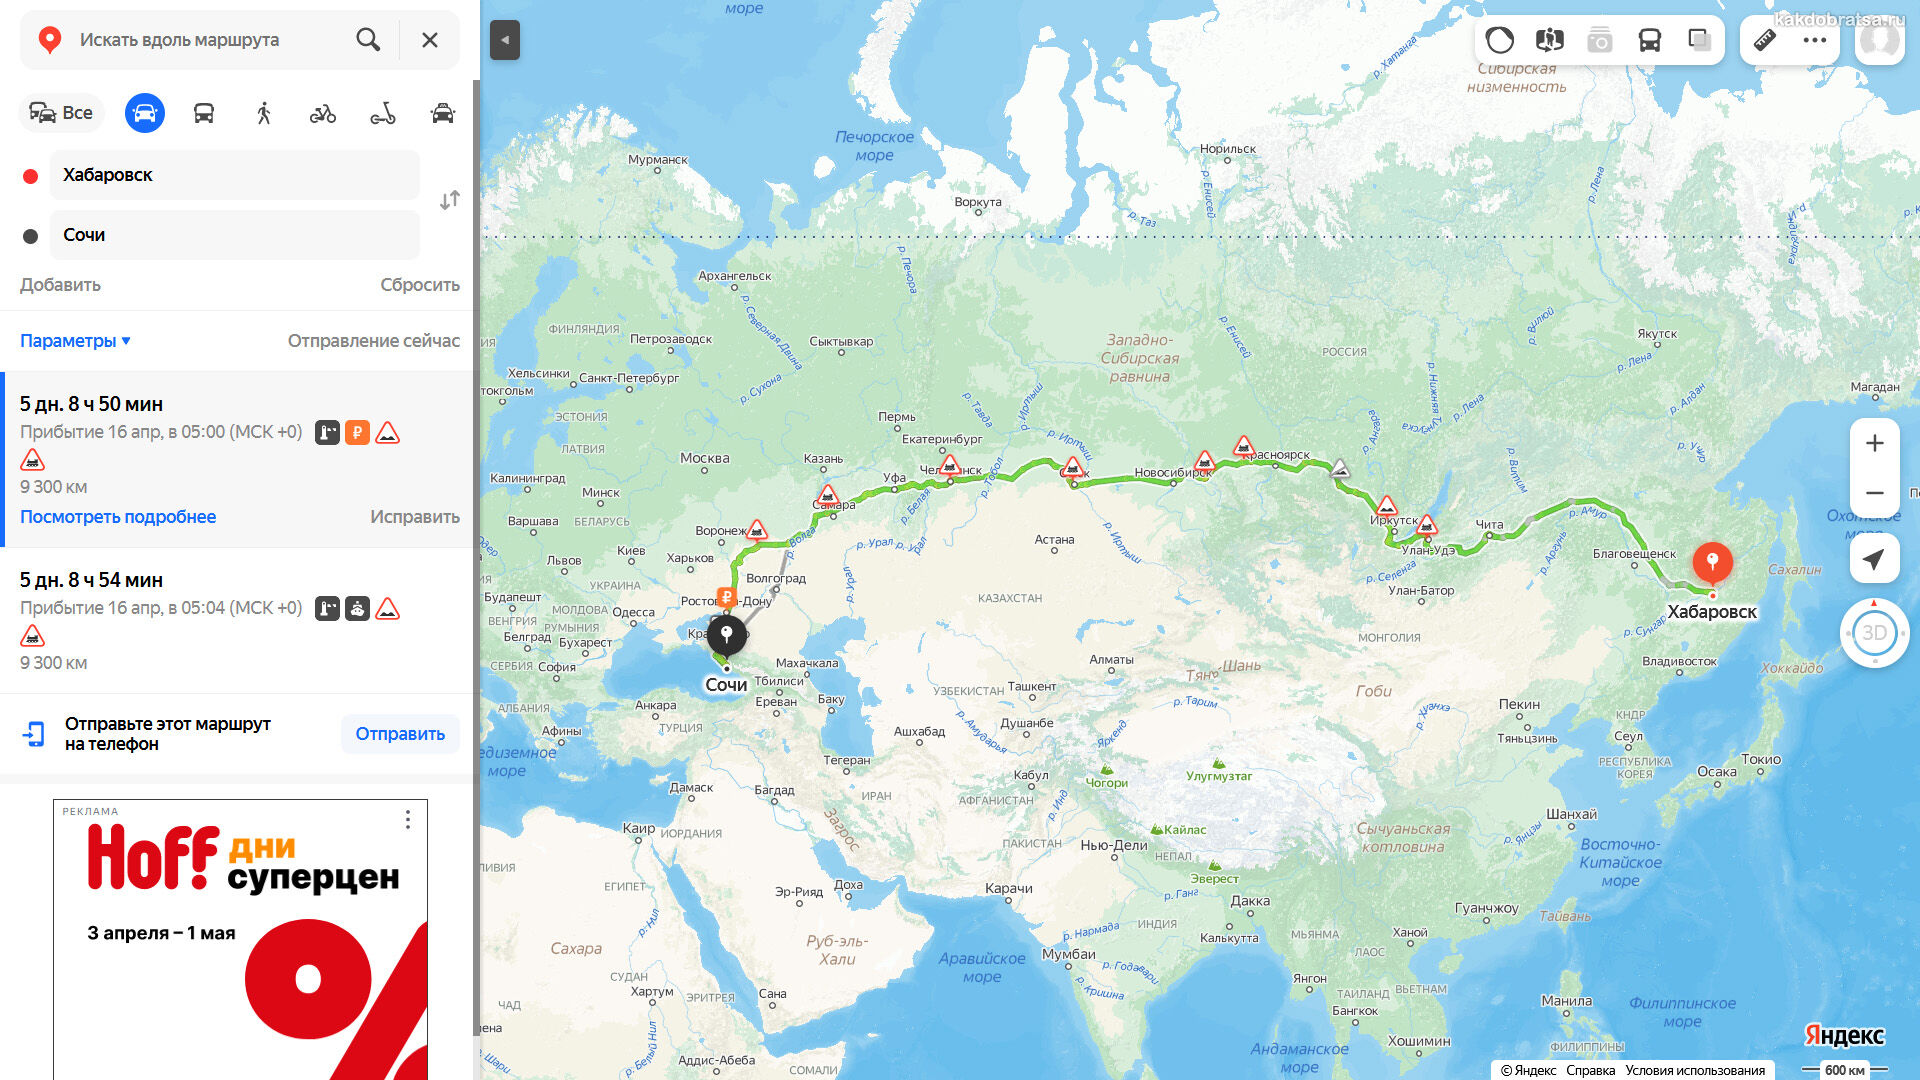 Расстояние от Хабаровска до Сочи по карте